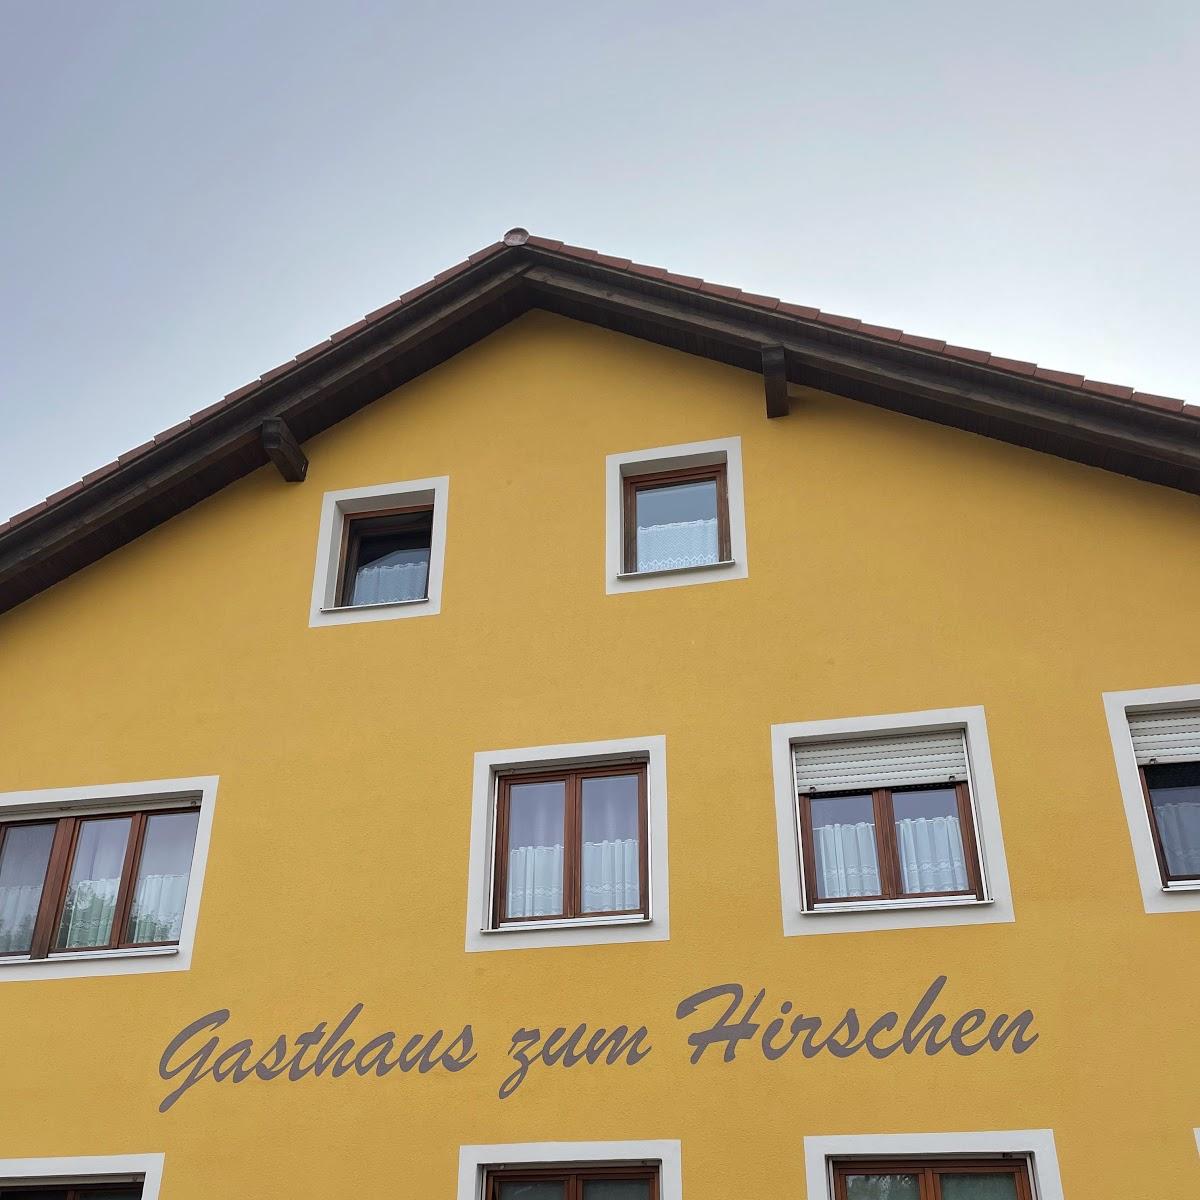 Restaurant "Gasthaus zum Hirschen" in Titting